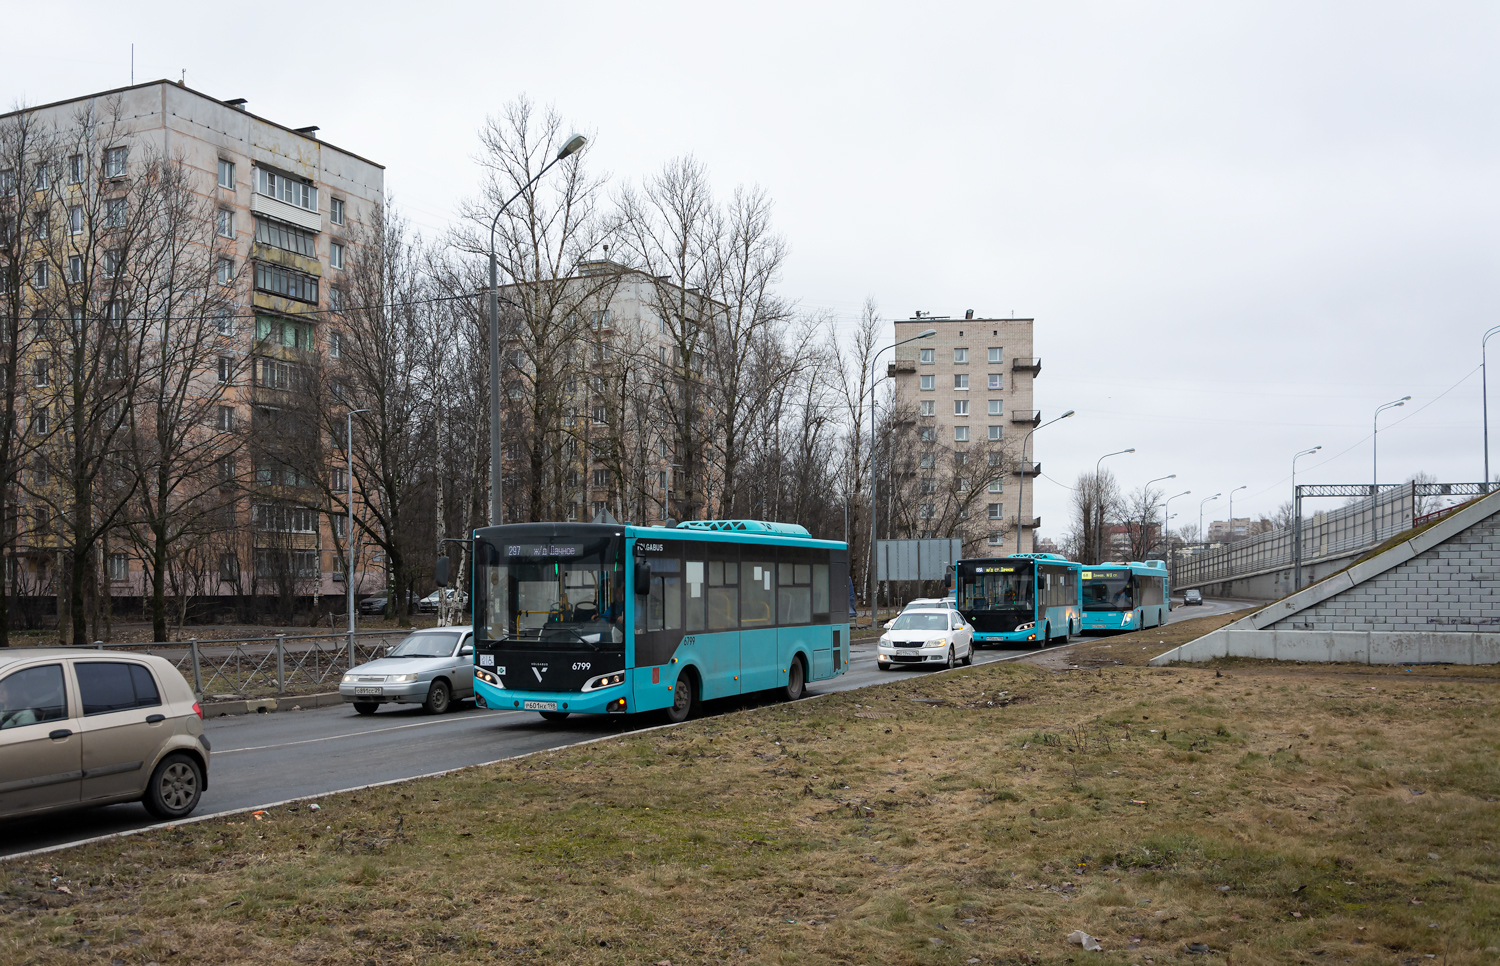 Saint-Pétersbourg, Volgabus-4298.G4 (LNG) # 6799